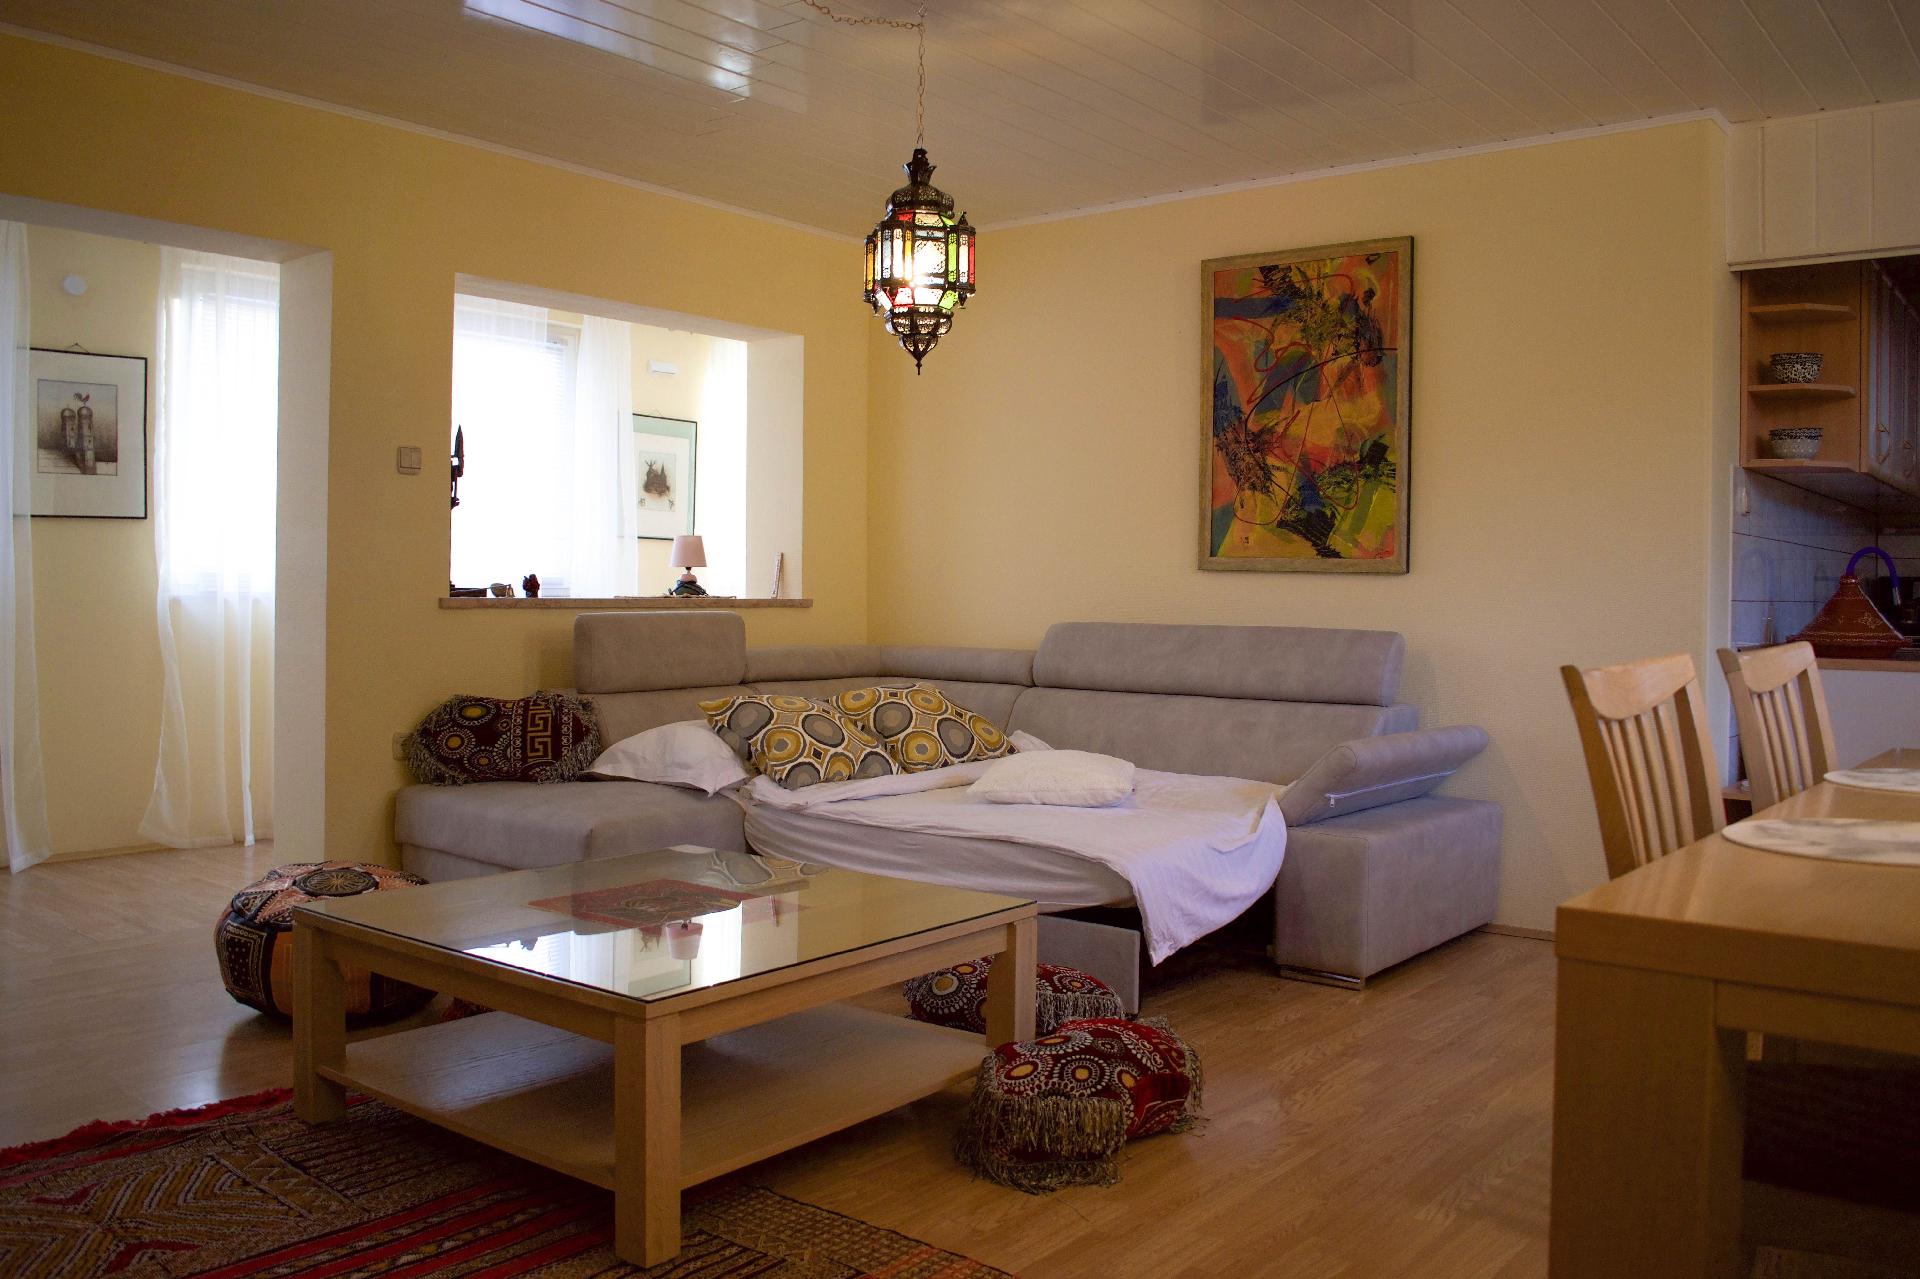 Ferienwohnung für 4 Personen ca. 100 m²  Ferienhaus in Dalmatien